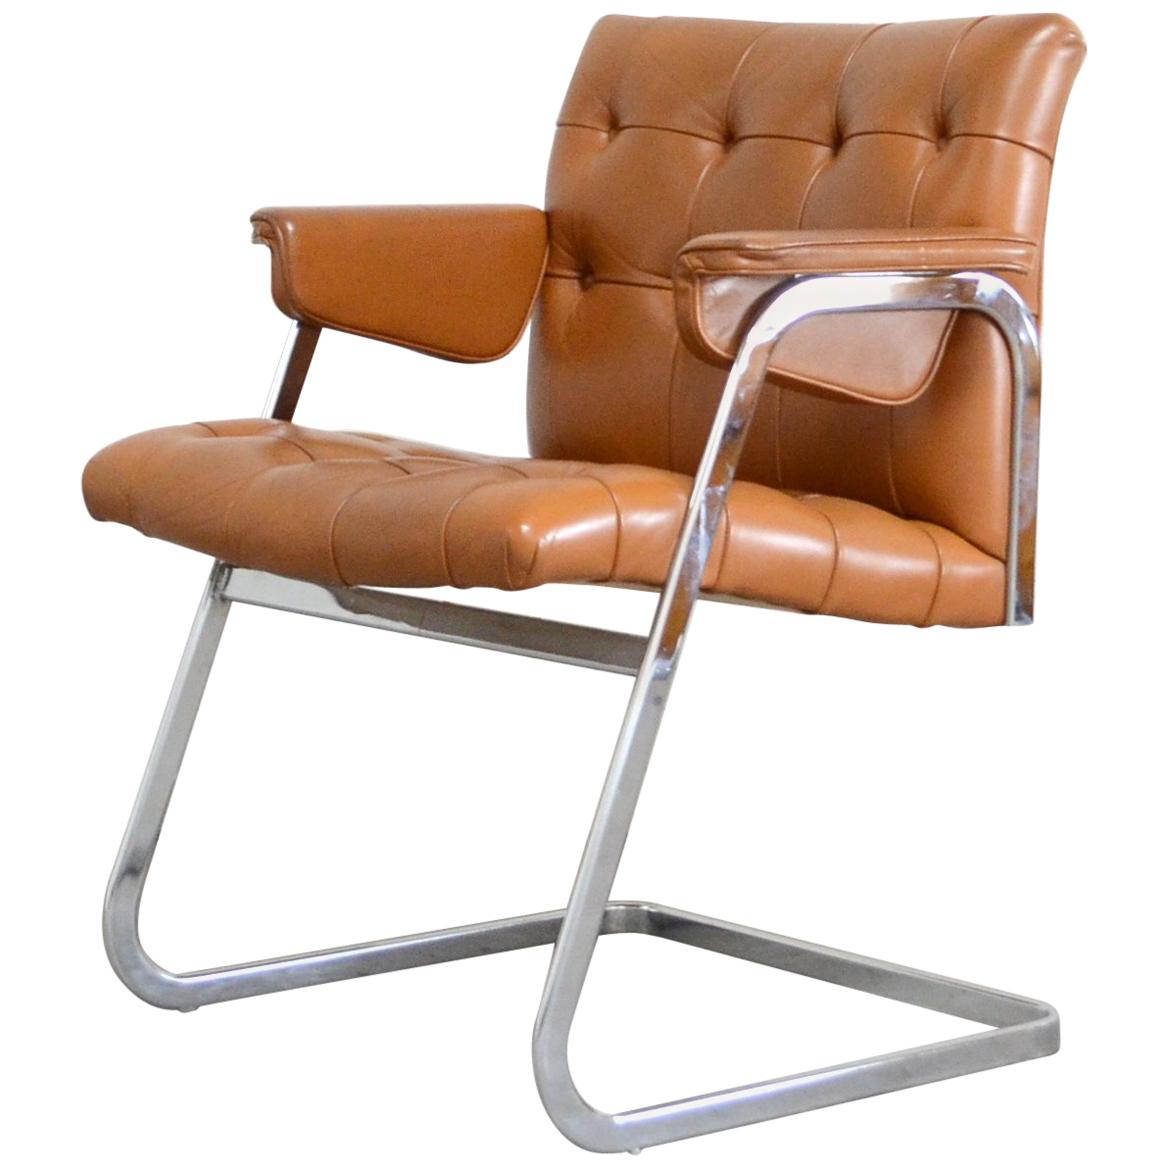 Robert Haussmann De Sede fauteuil cognac RH 305/ 304 UNESCO Softpad Chair